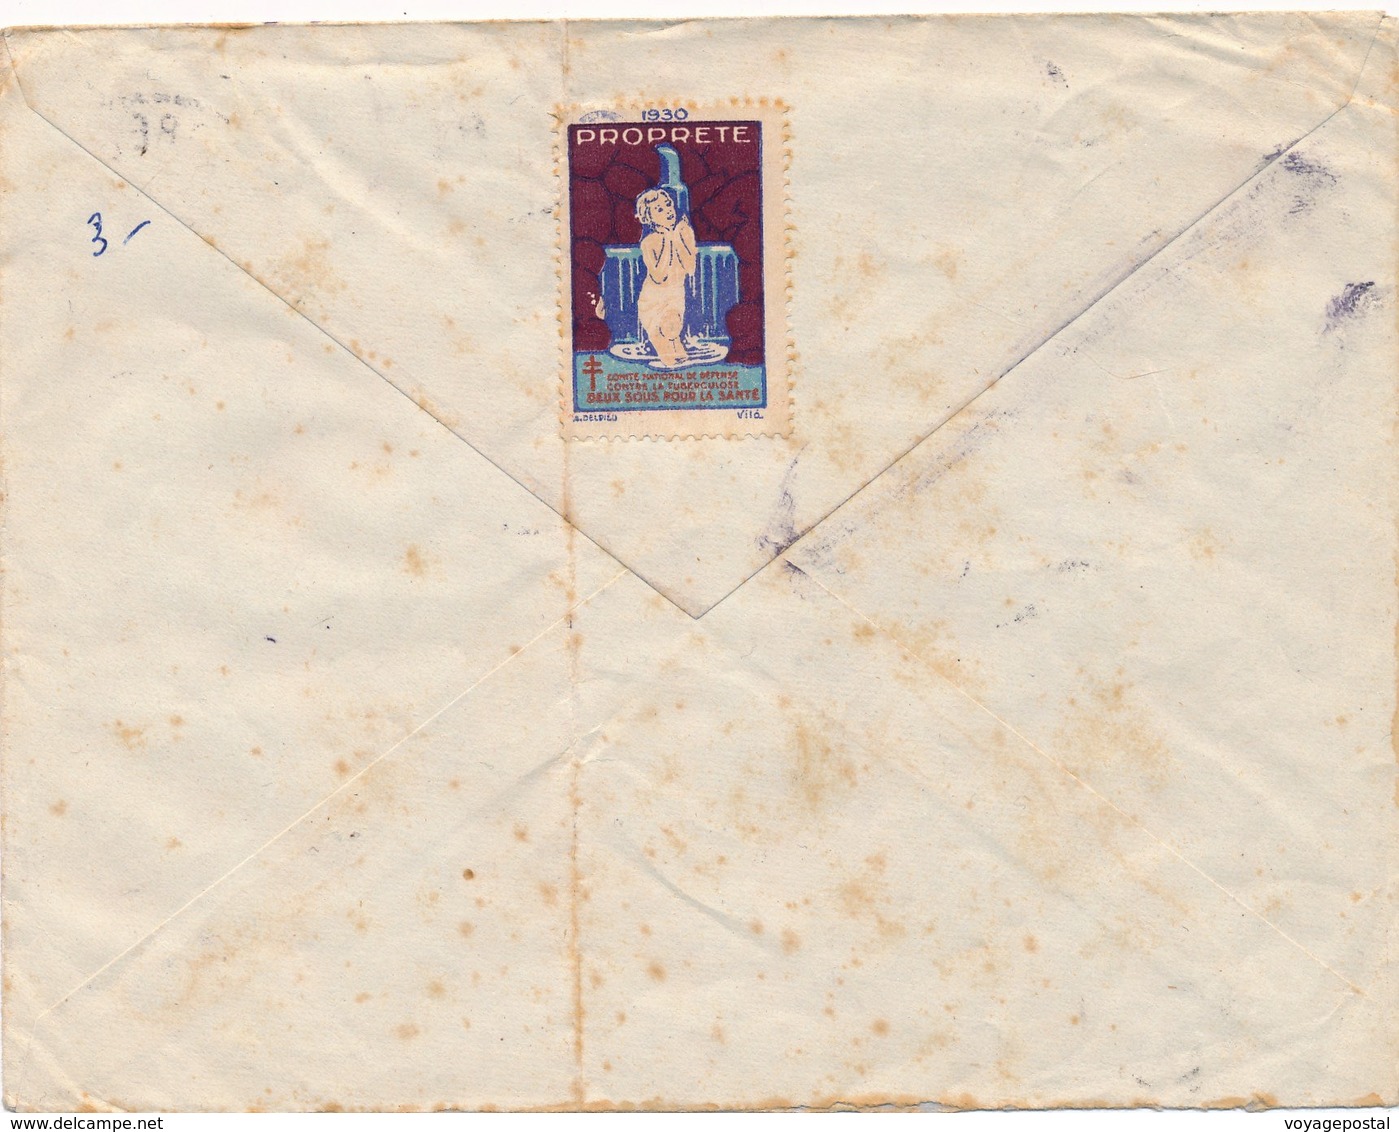 Lettre Exposition Coloniale 50c ST Pierre Et Miquelon Cachet Service Des Postes - Briefe U. Dokumente